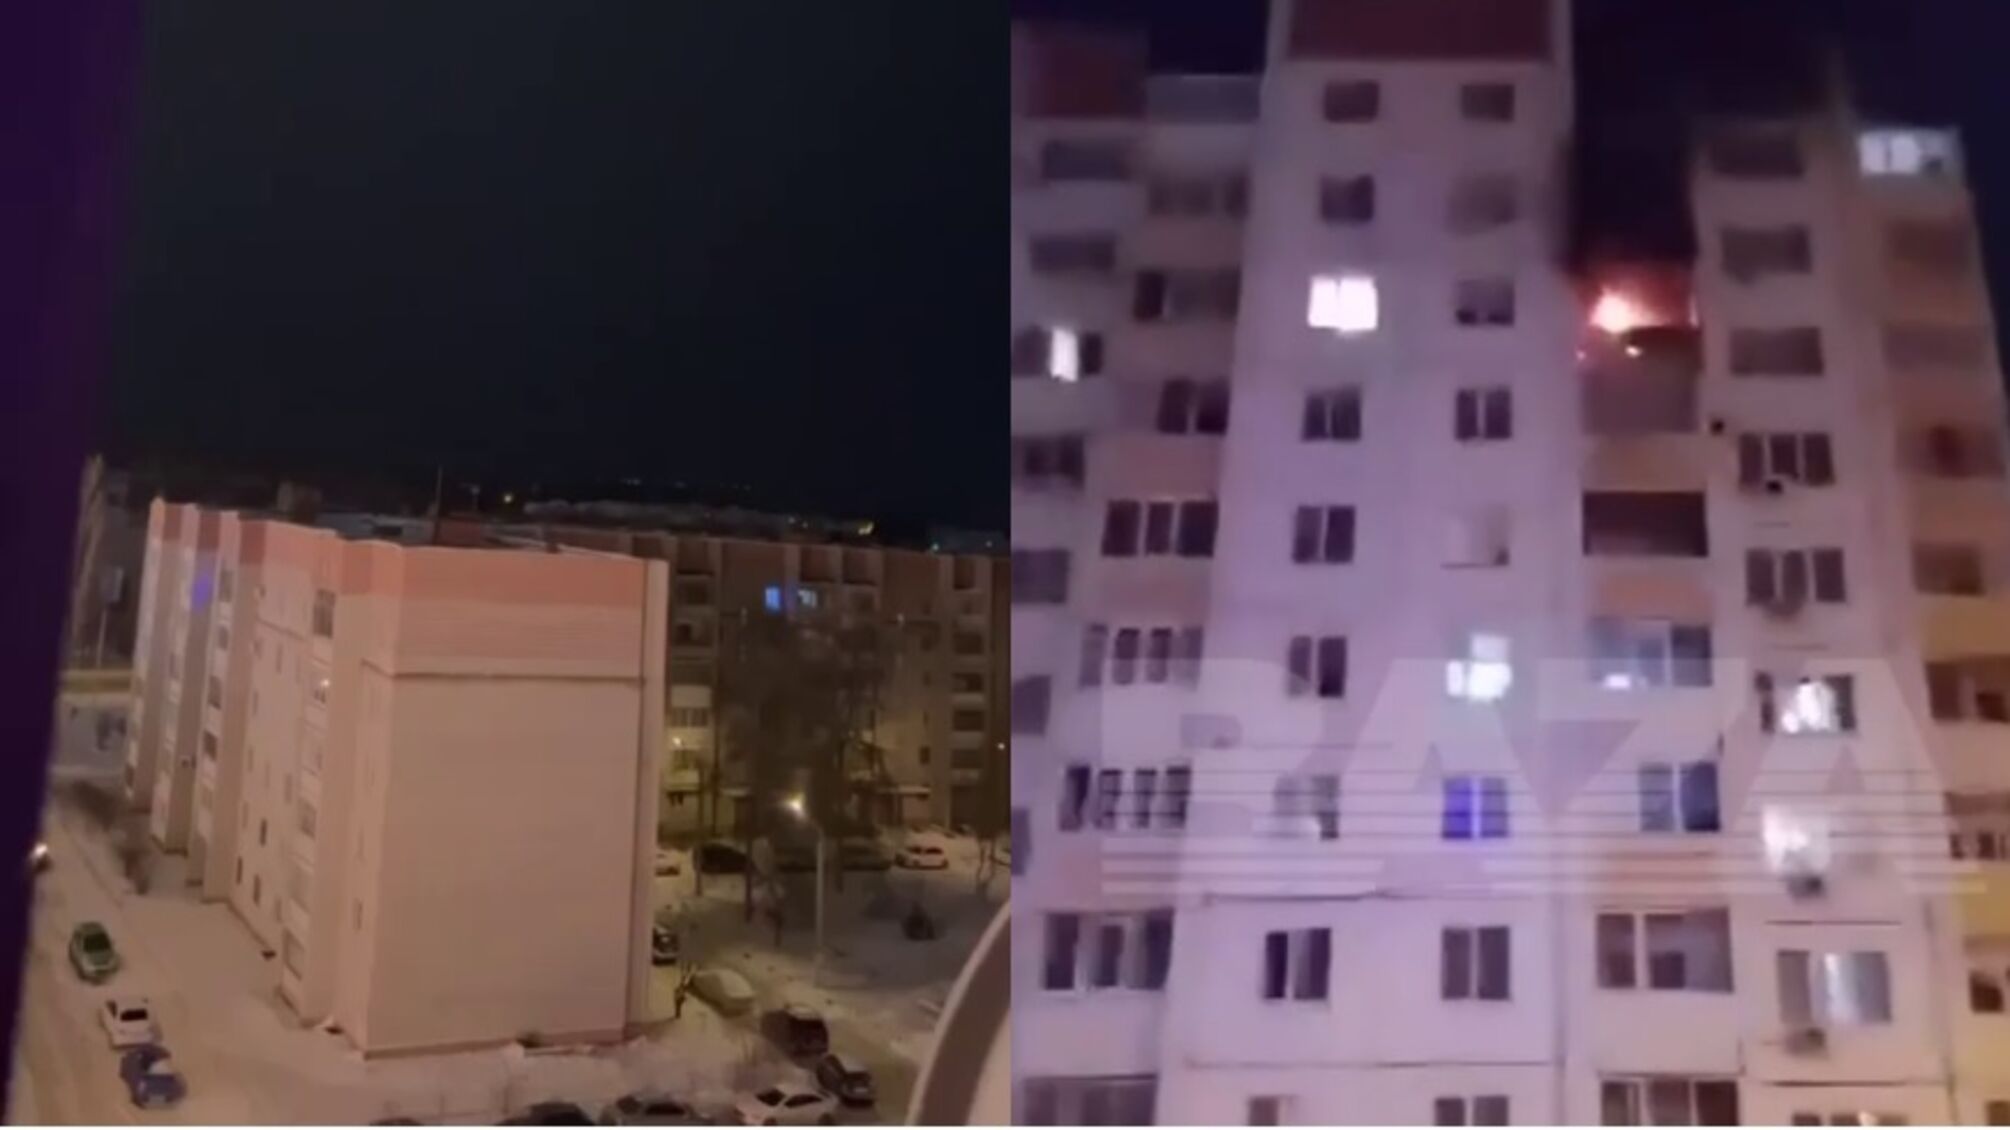  В Воронеже прозвучала серия взрывов